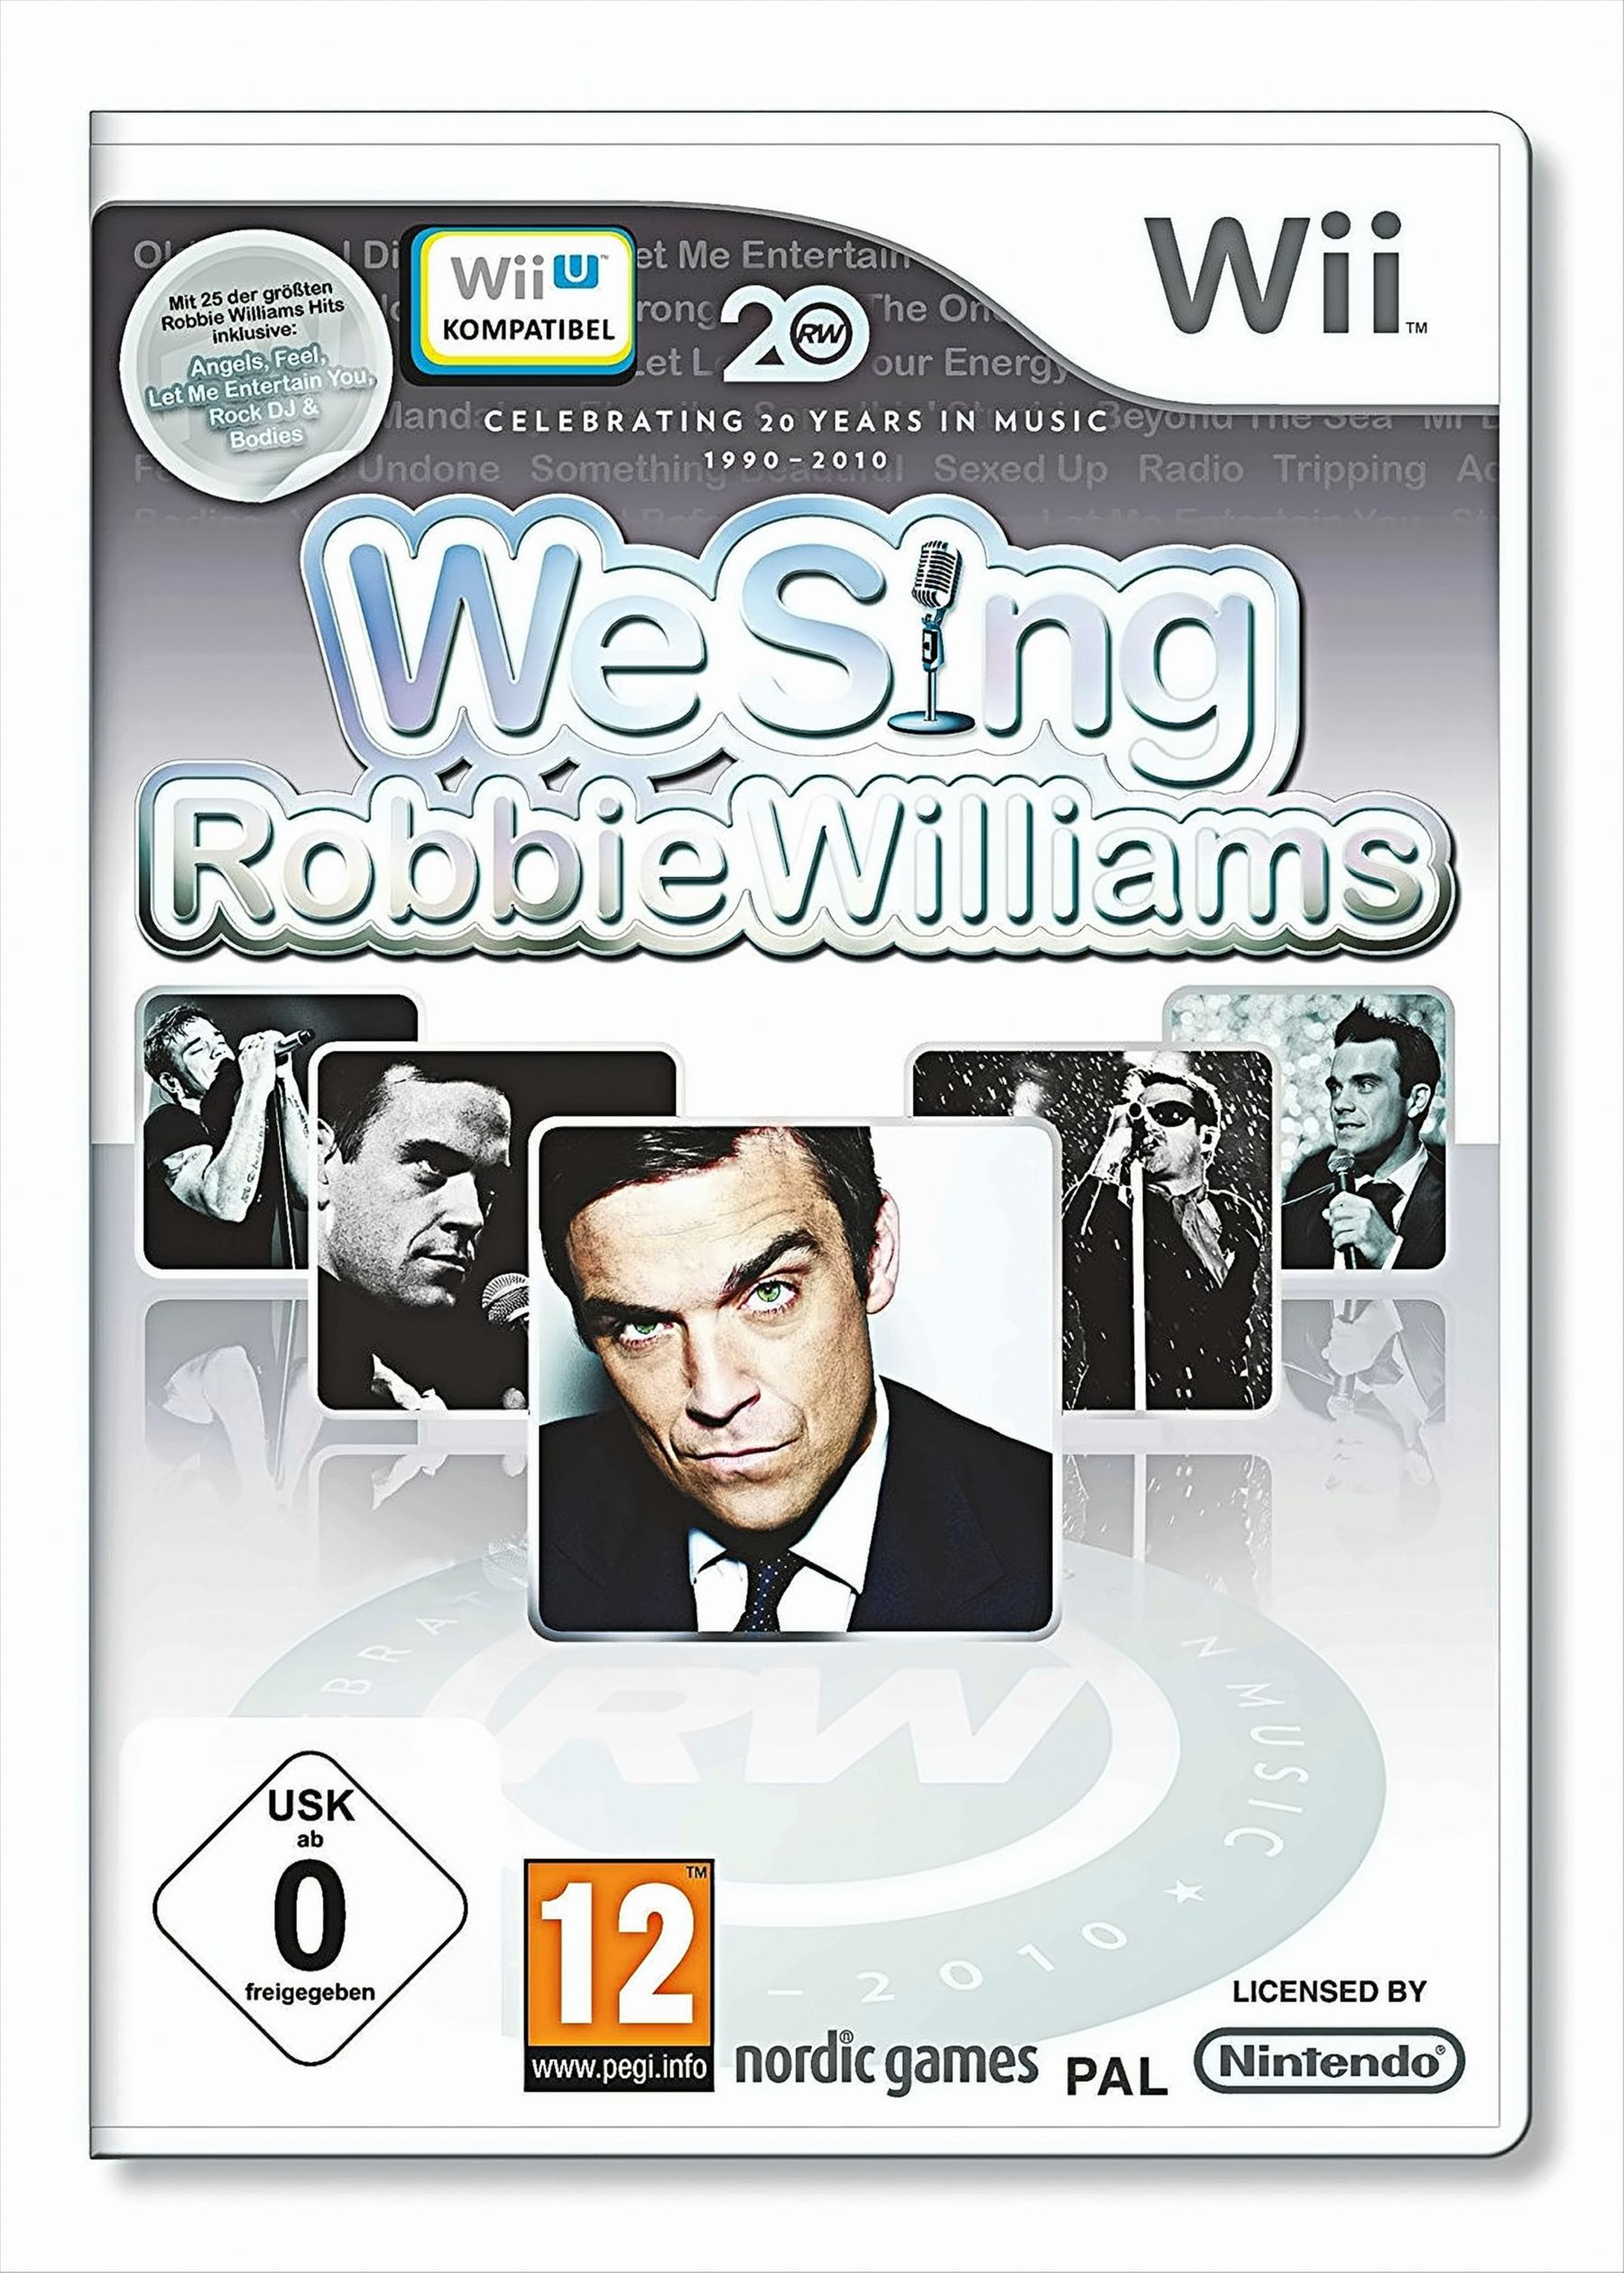 Robbie We [Nintendo - Sing: Wii] Willams